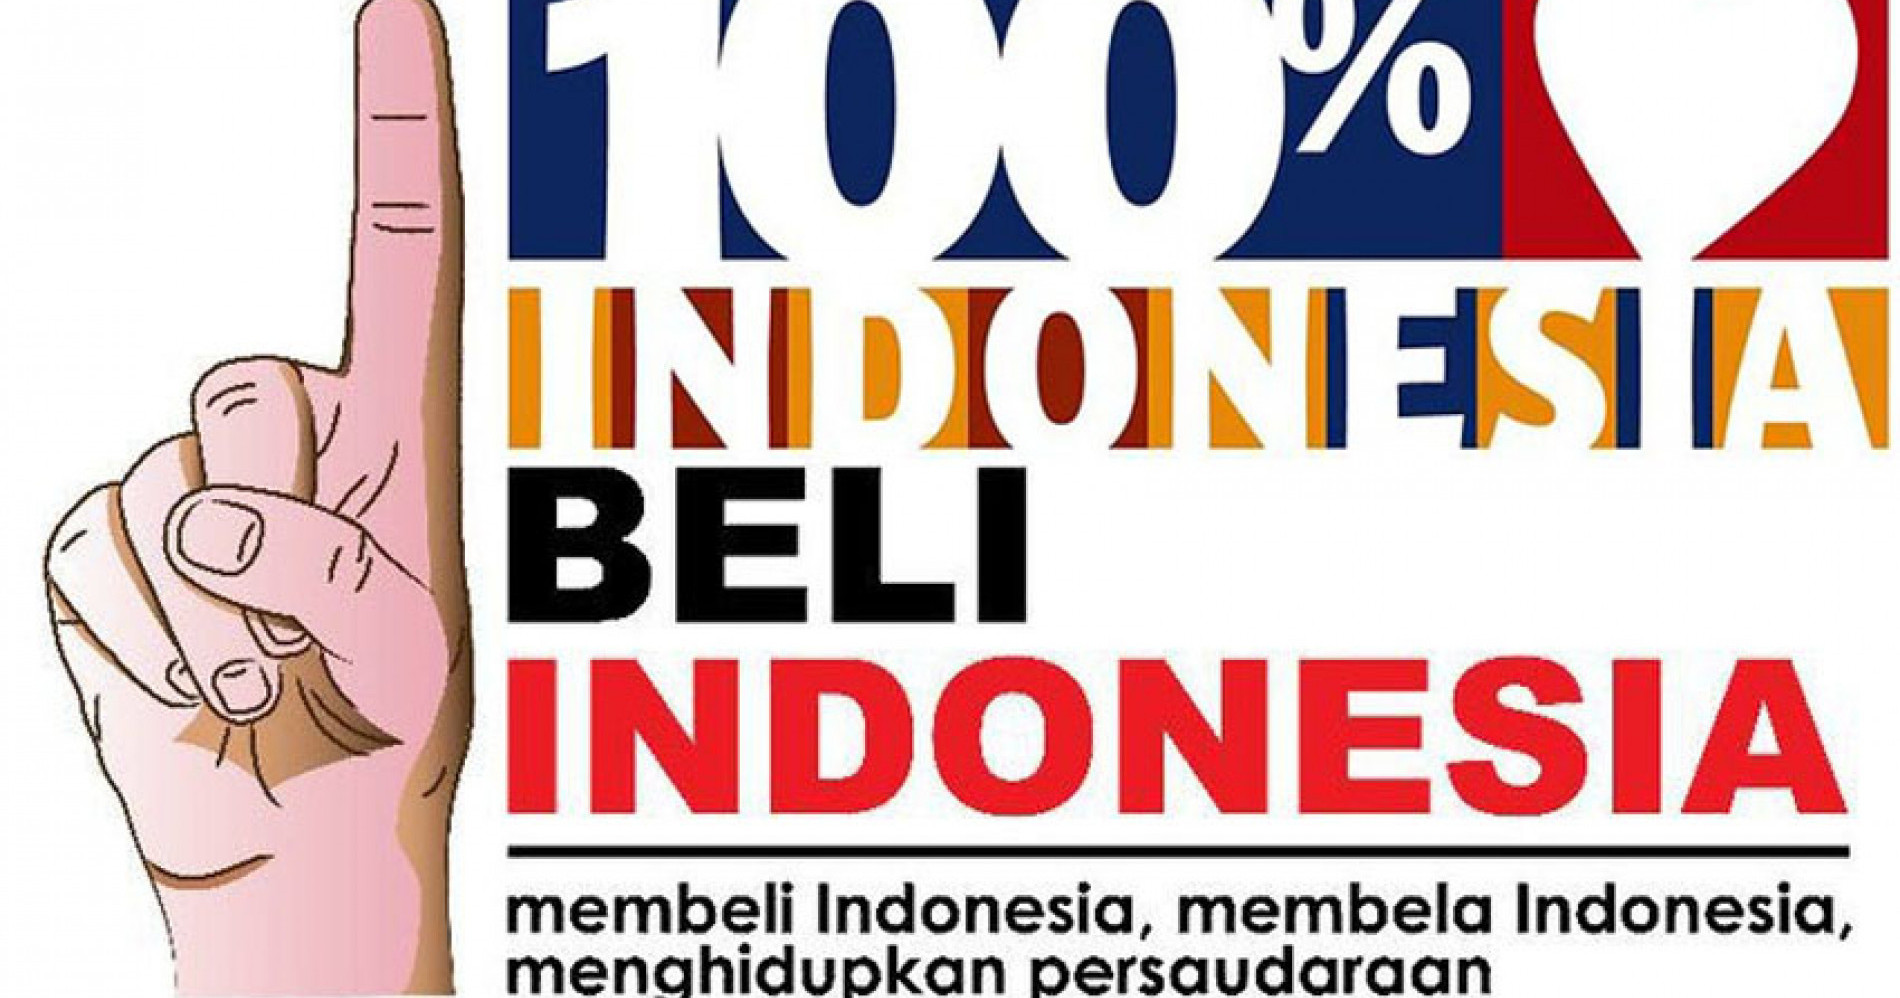 Apa contoh tindakan dari cinta produk indonesia